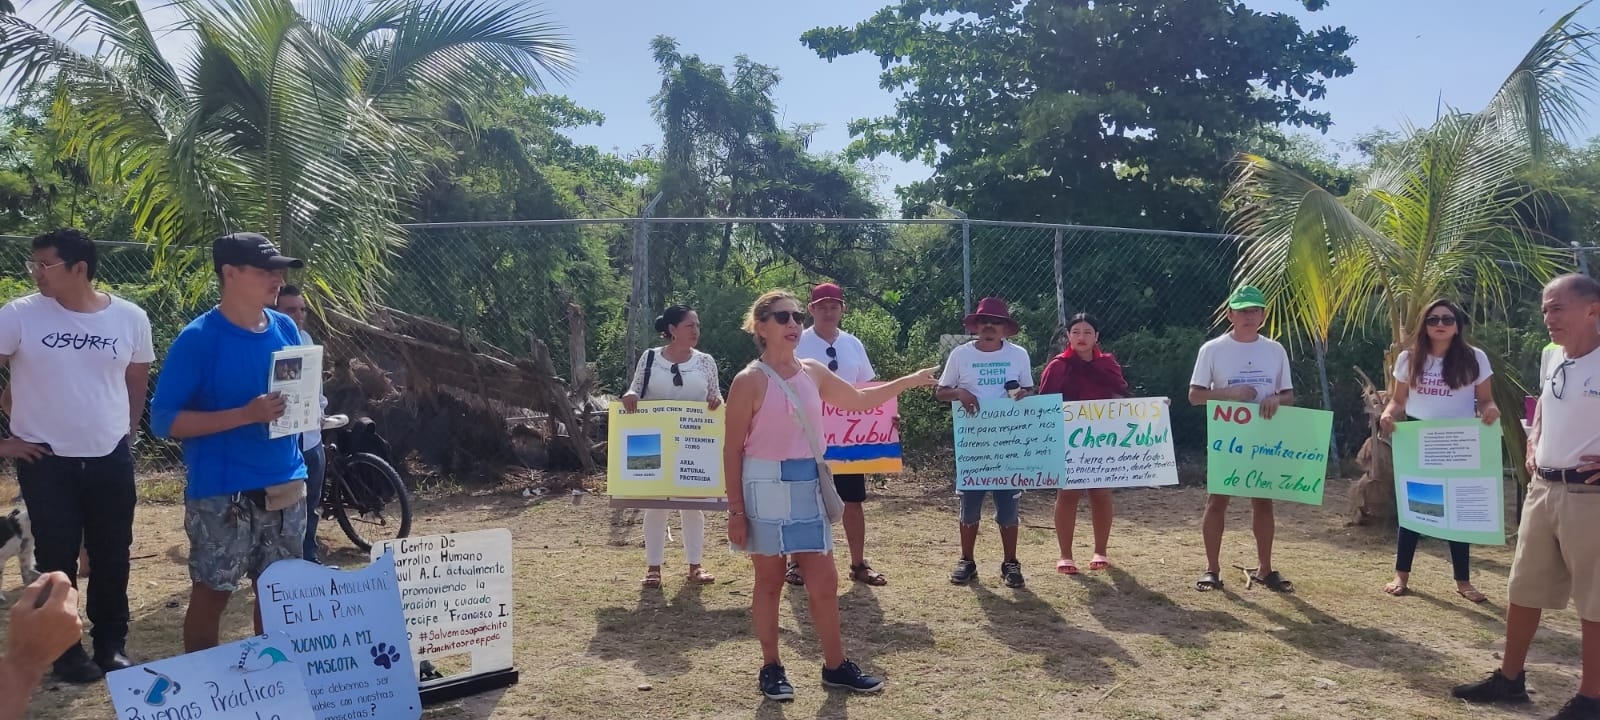 Habitantes de Playa del Carmen protestan contra la certificación "Blue Flag" de la playa Colosio